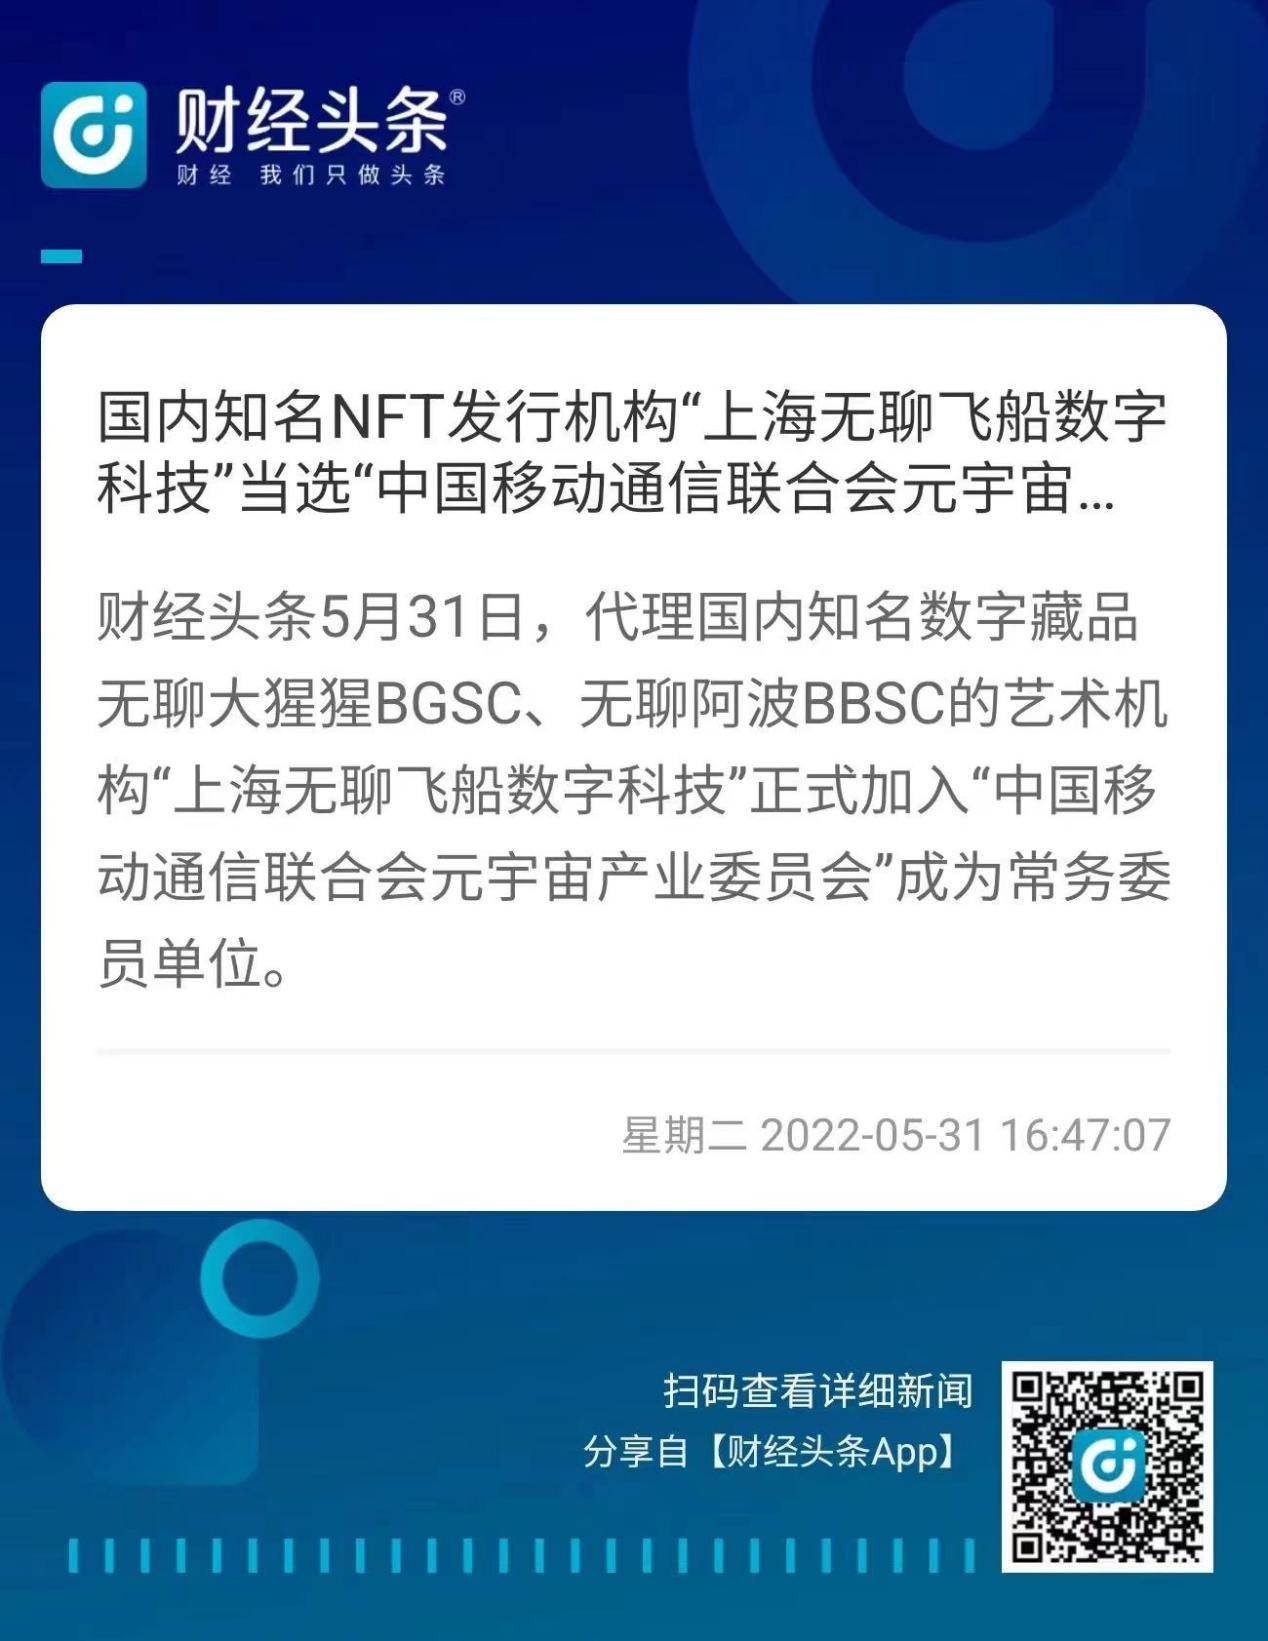 国内知名NFT发行机构“上海无聊飞船数字科技”当选CMCA-MCC常务委员单位